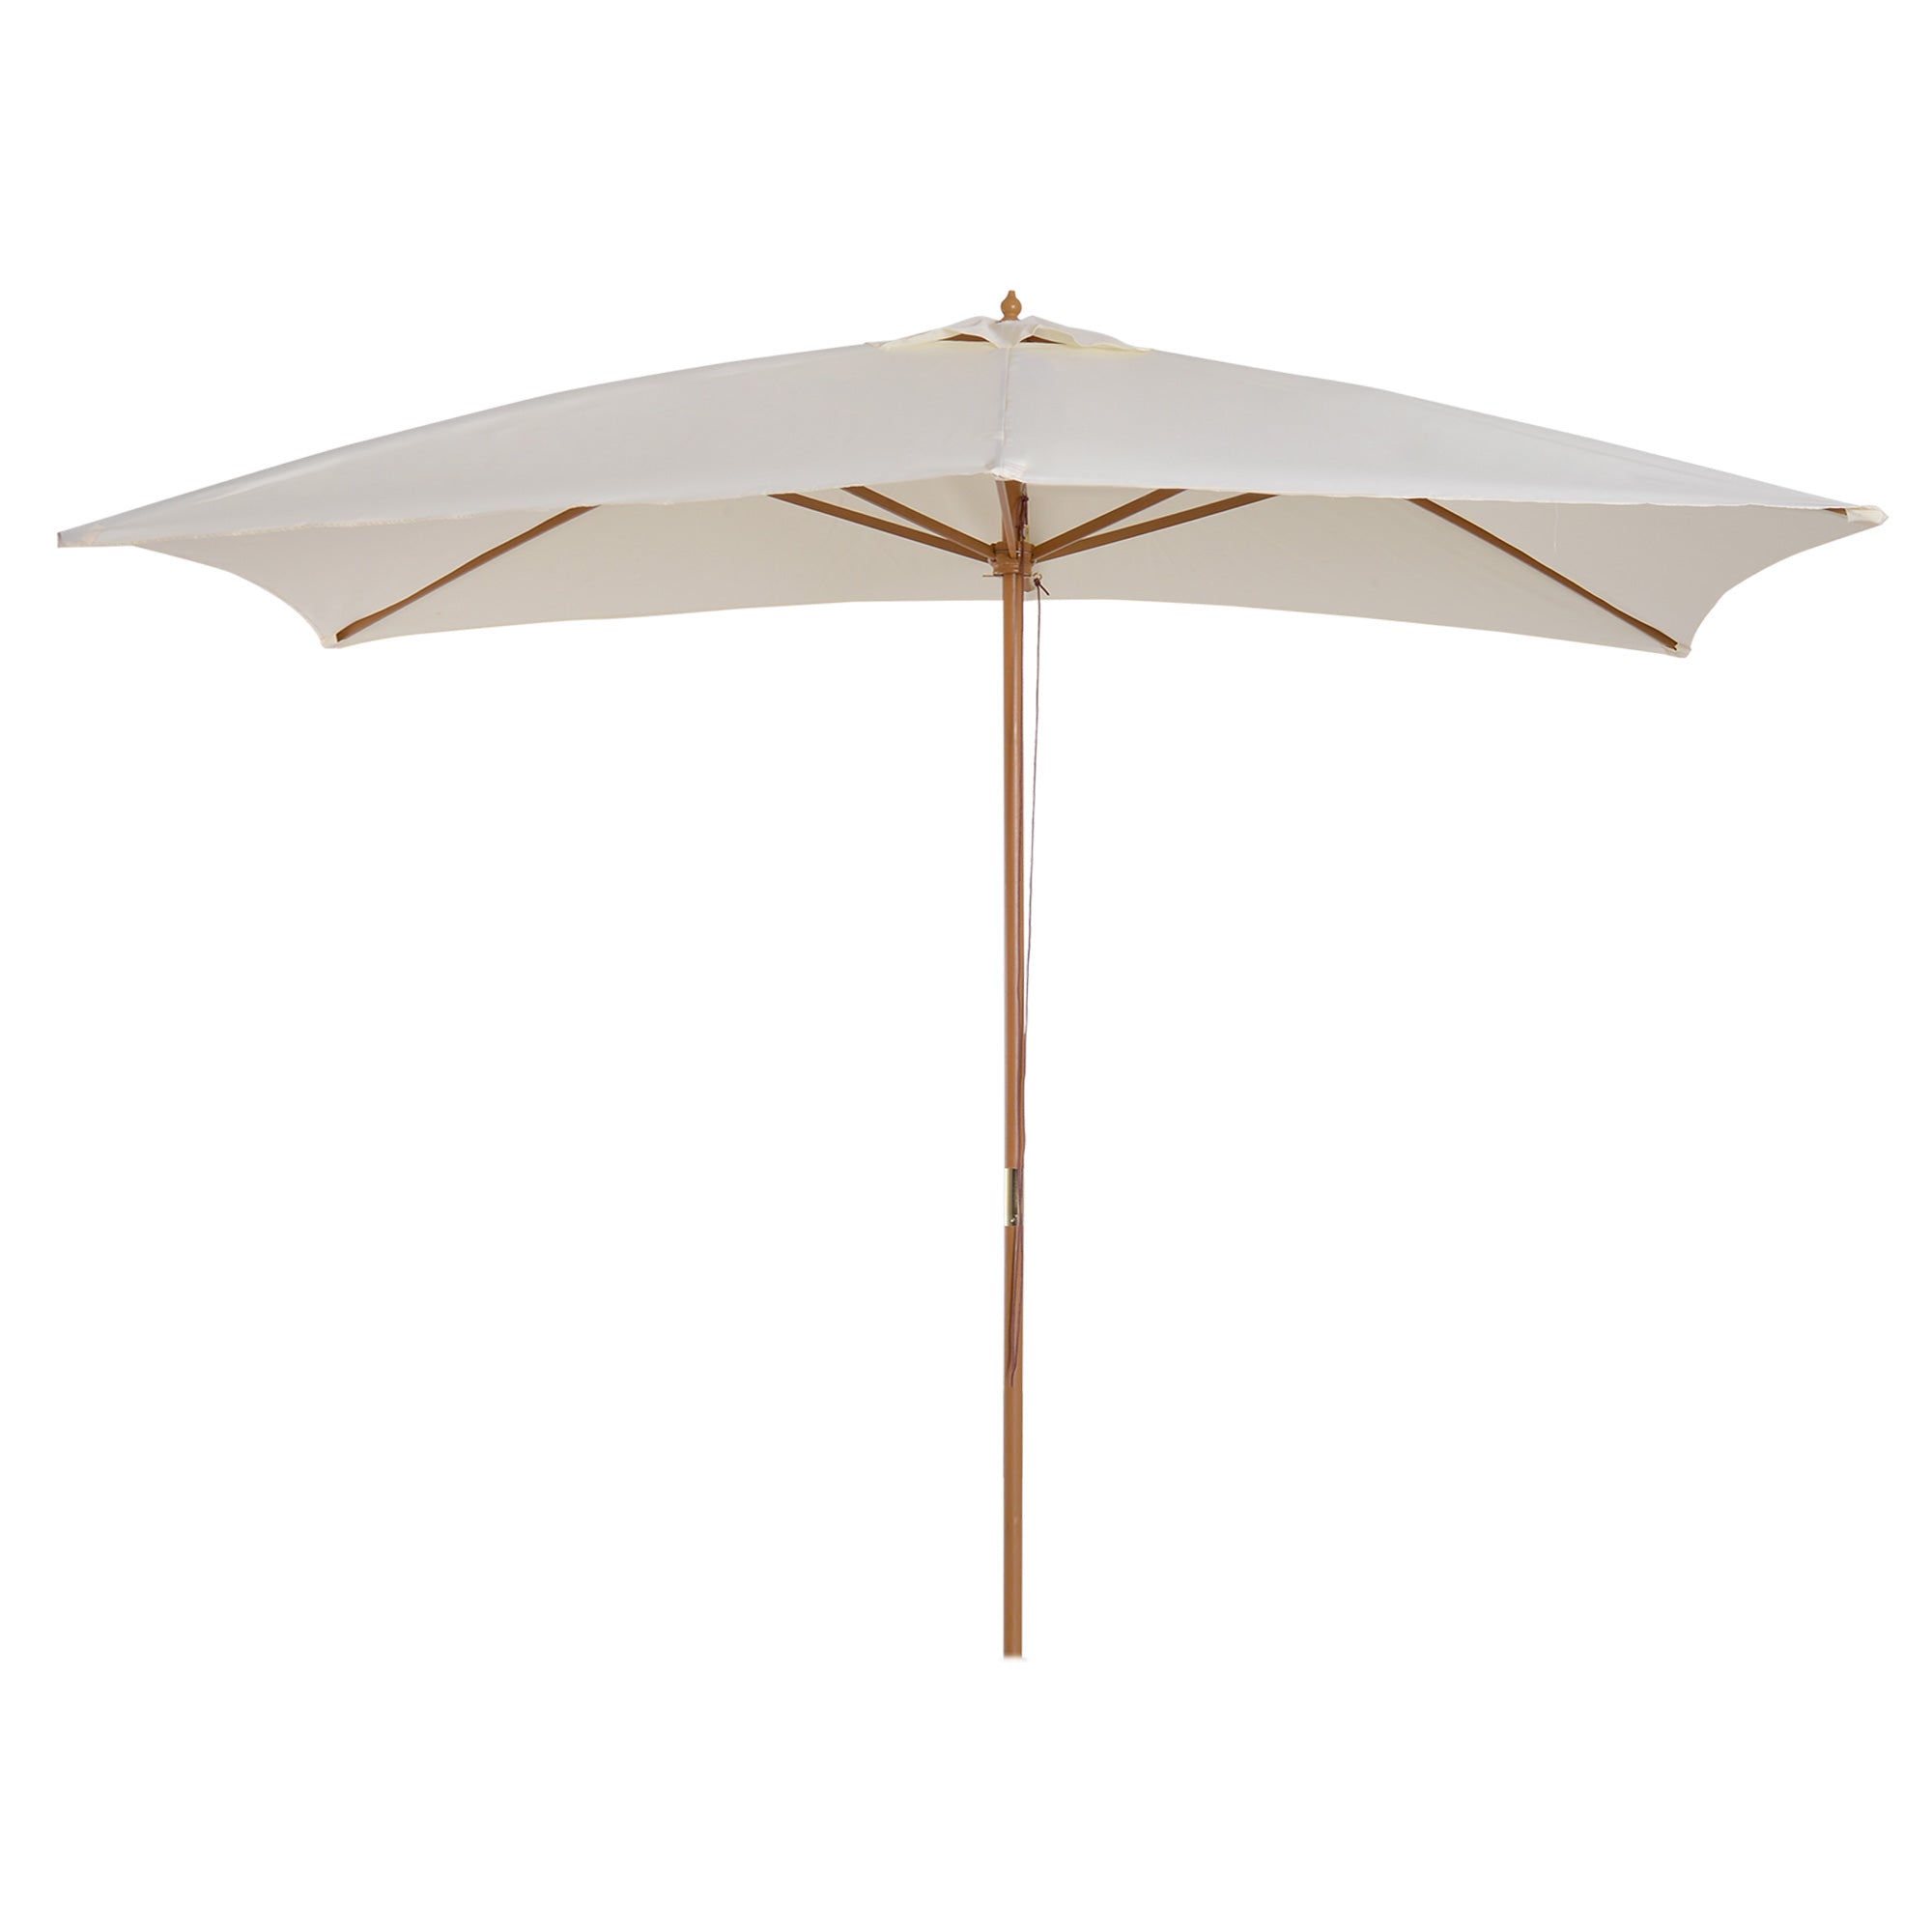 Outsunny Wooden Garden Parasol Sun Shade Patio Umbrella Canopy Cream White  | TJ Hughes